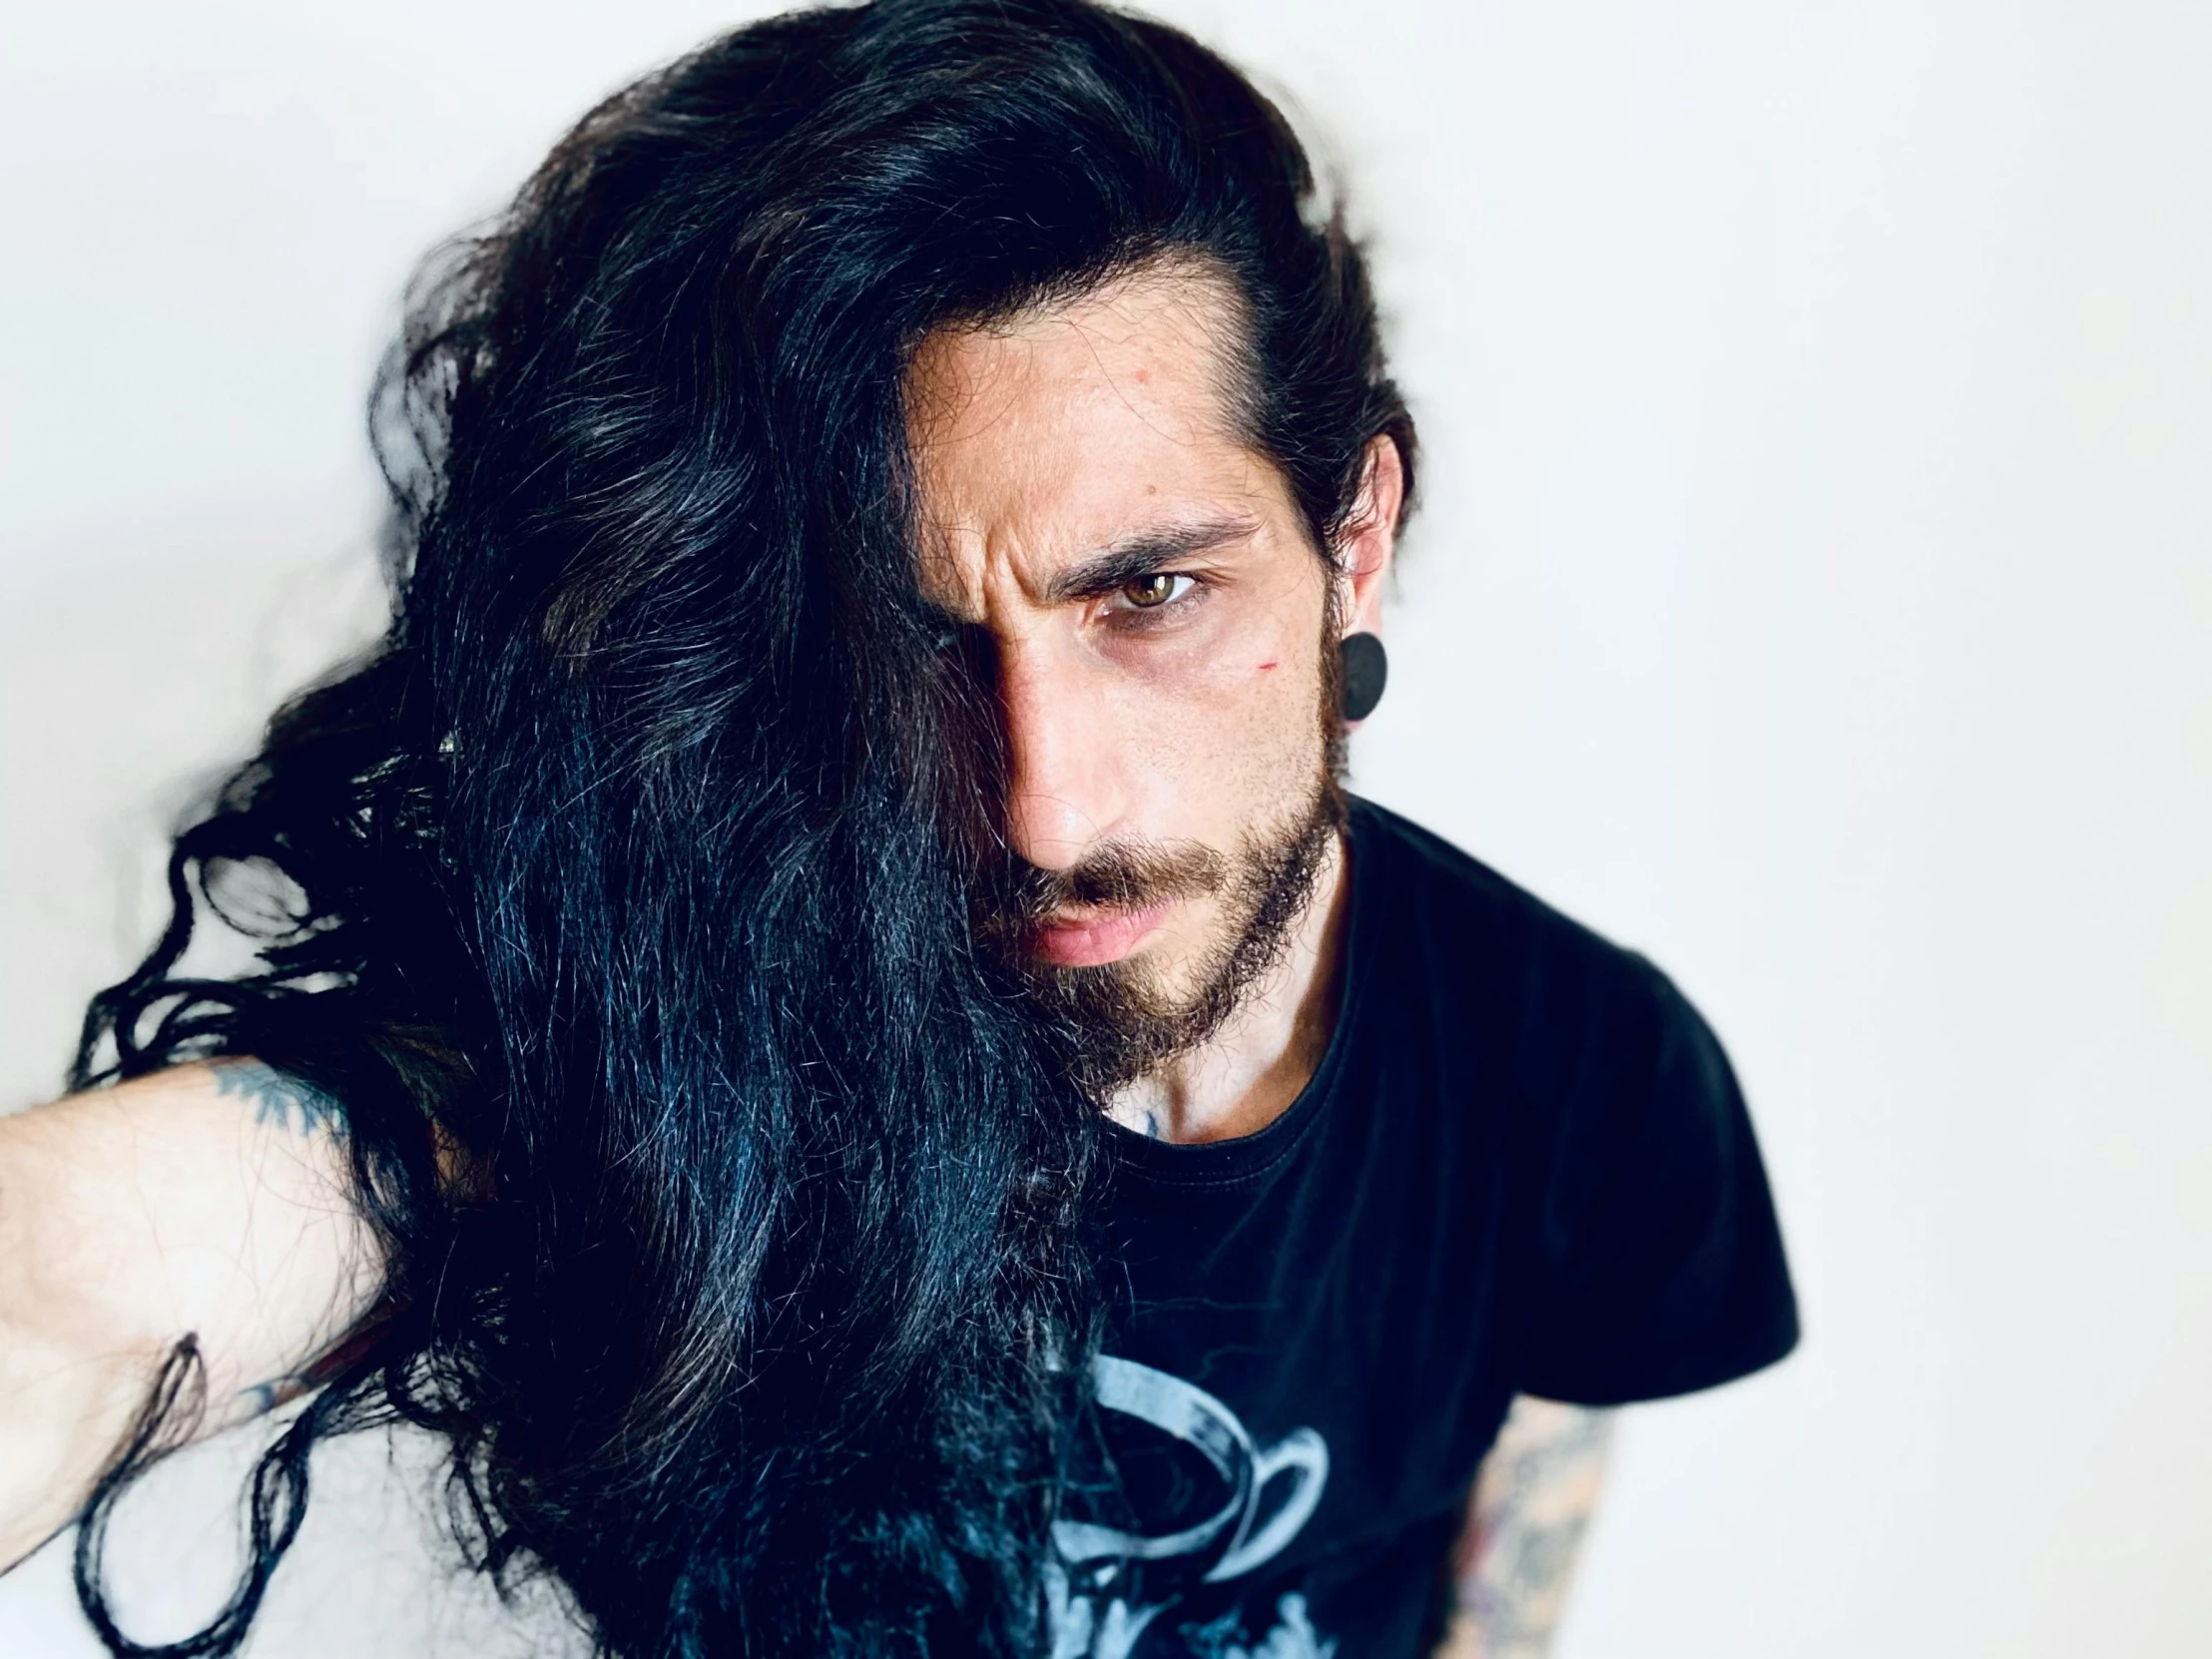 a man with long dark hair and a beard